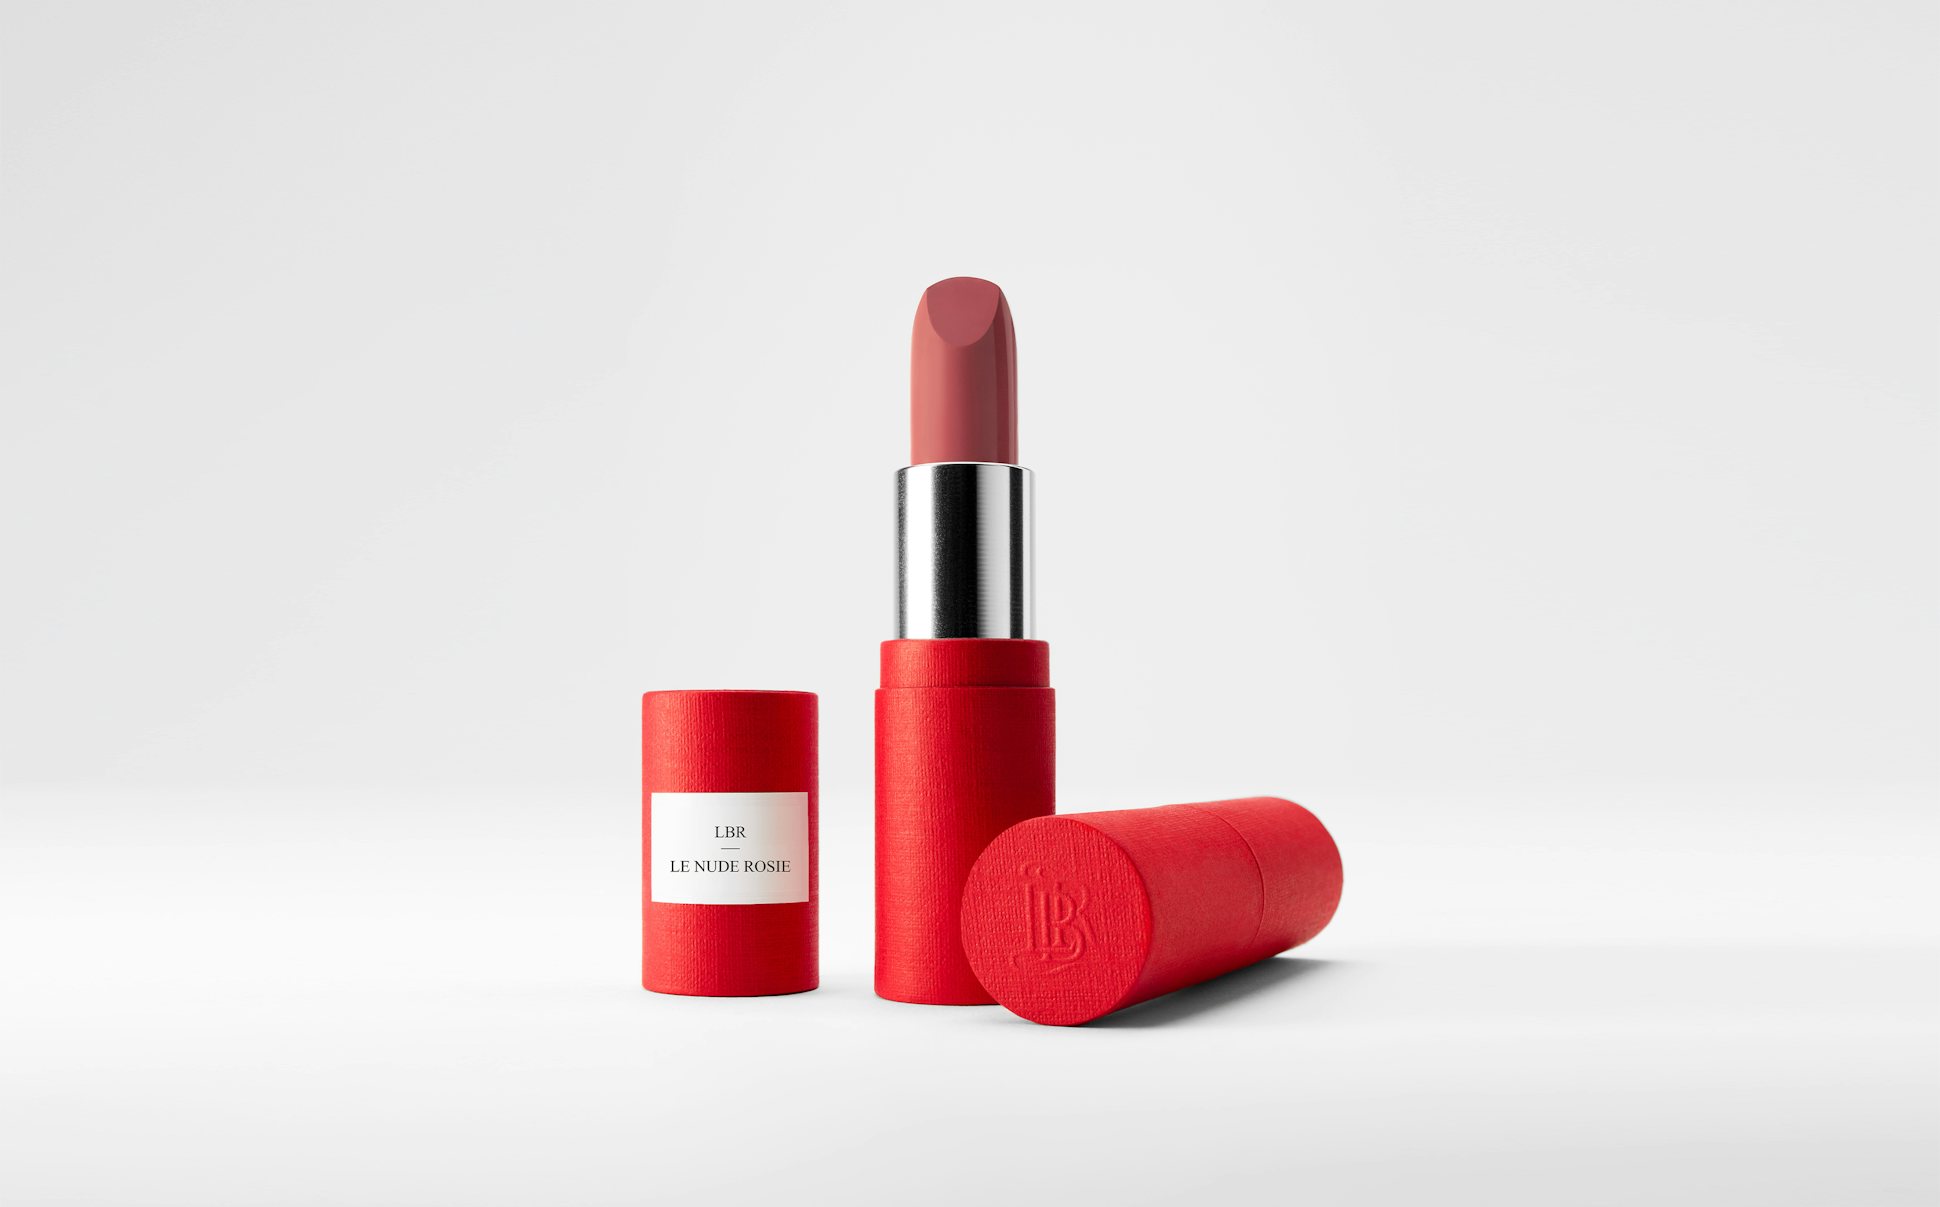 La bouche rouge Le Nude Rosie lipstick in the red paper case